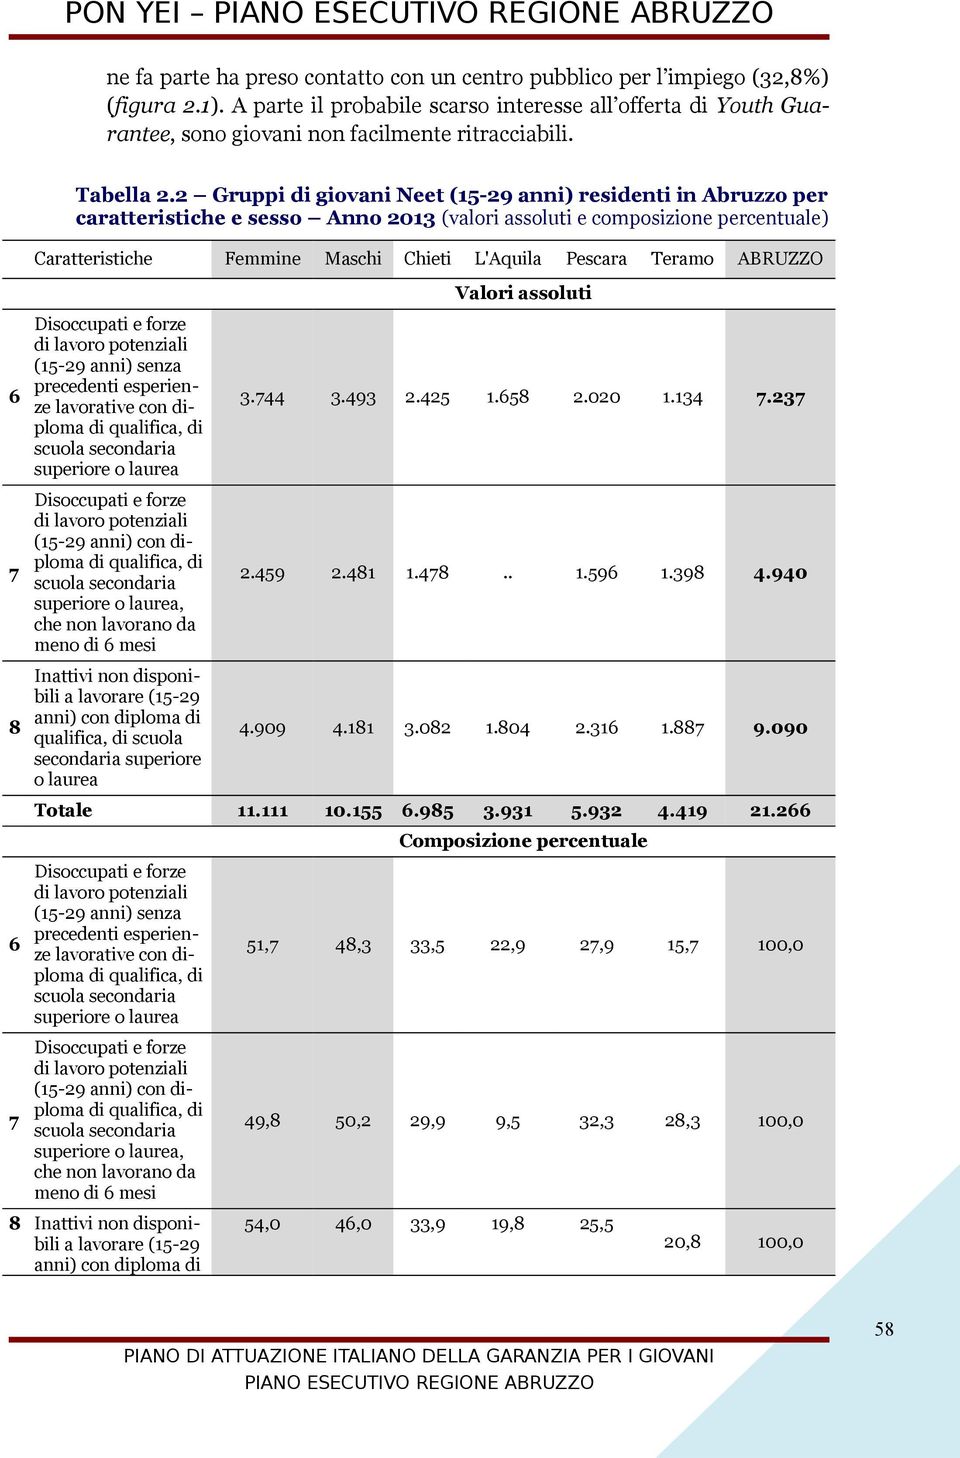 2 Gruppi di giovani Neet (15-29 anni) residenti in Abruzzo per caratteristiche e sesso Anno 2013 (valori assoluti e composizione percentuale) Caratteristiche Femmine Maschi Chieti L'Aquila Pescara